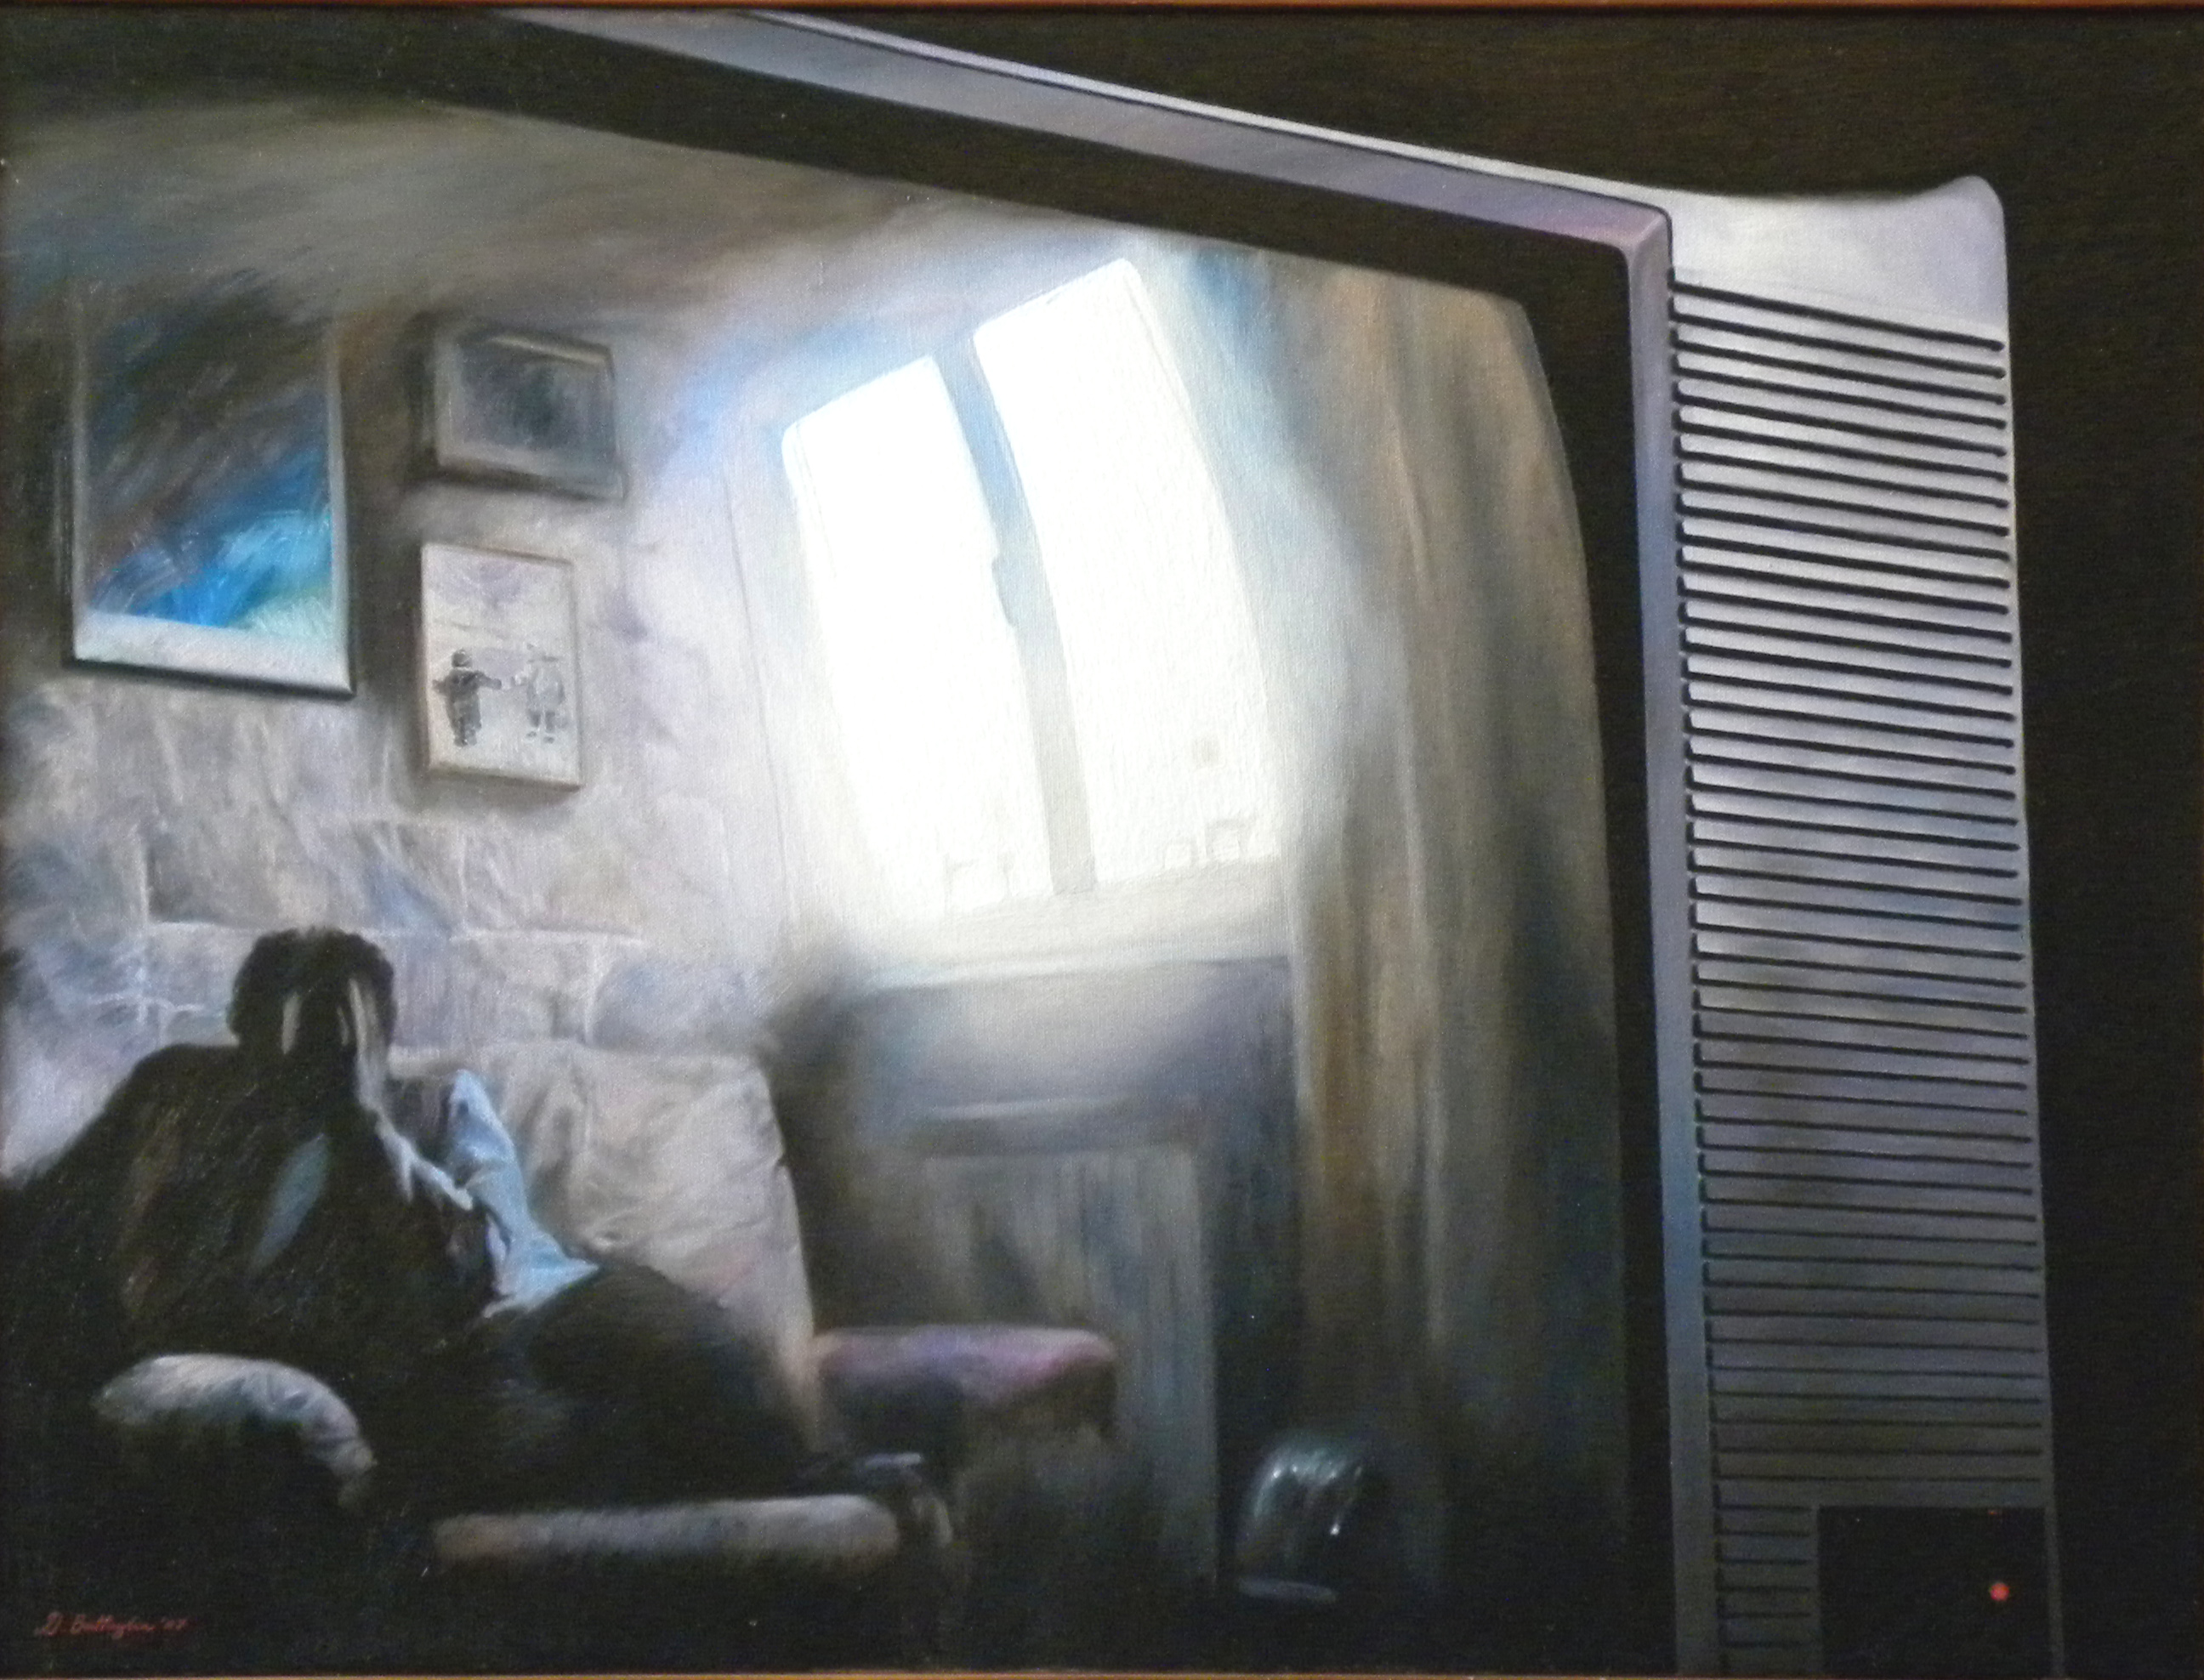 
'Reality' 
(2007), 
olio su tela 
60x80 cm
